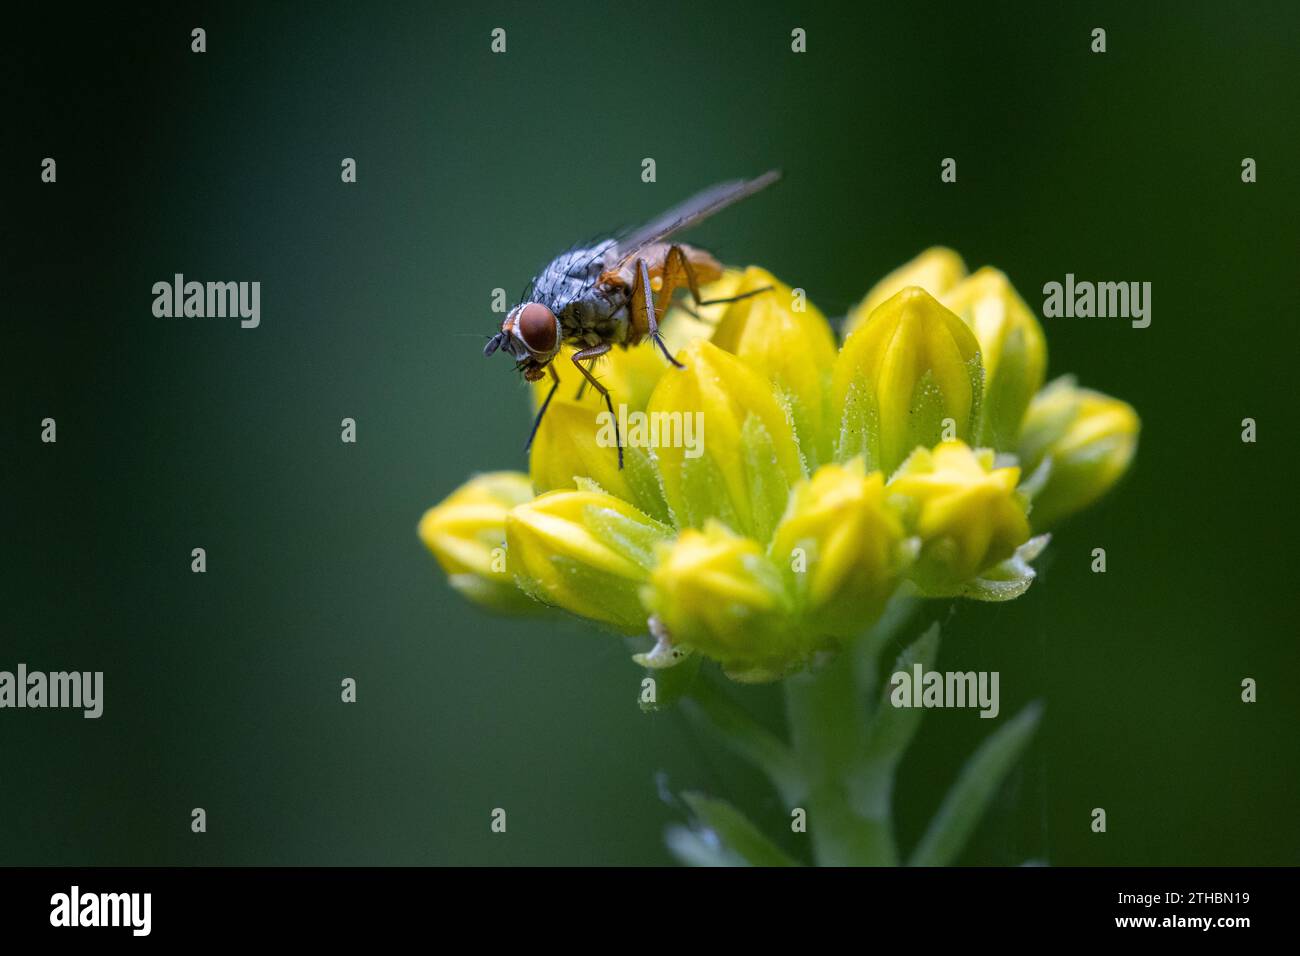 Gros plan d'une mouche (peut-être Pegomya bicolor) perchée sur une fleur de rocaille jaune, Angleterre, Royaume-Uni Banque D'Images